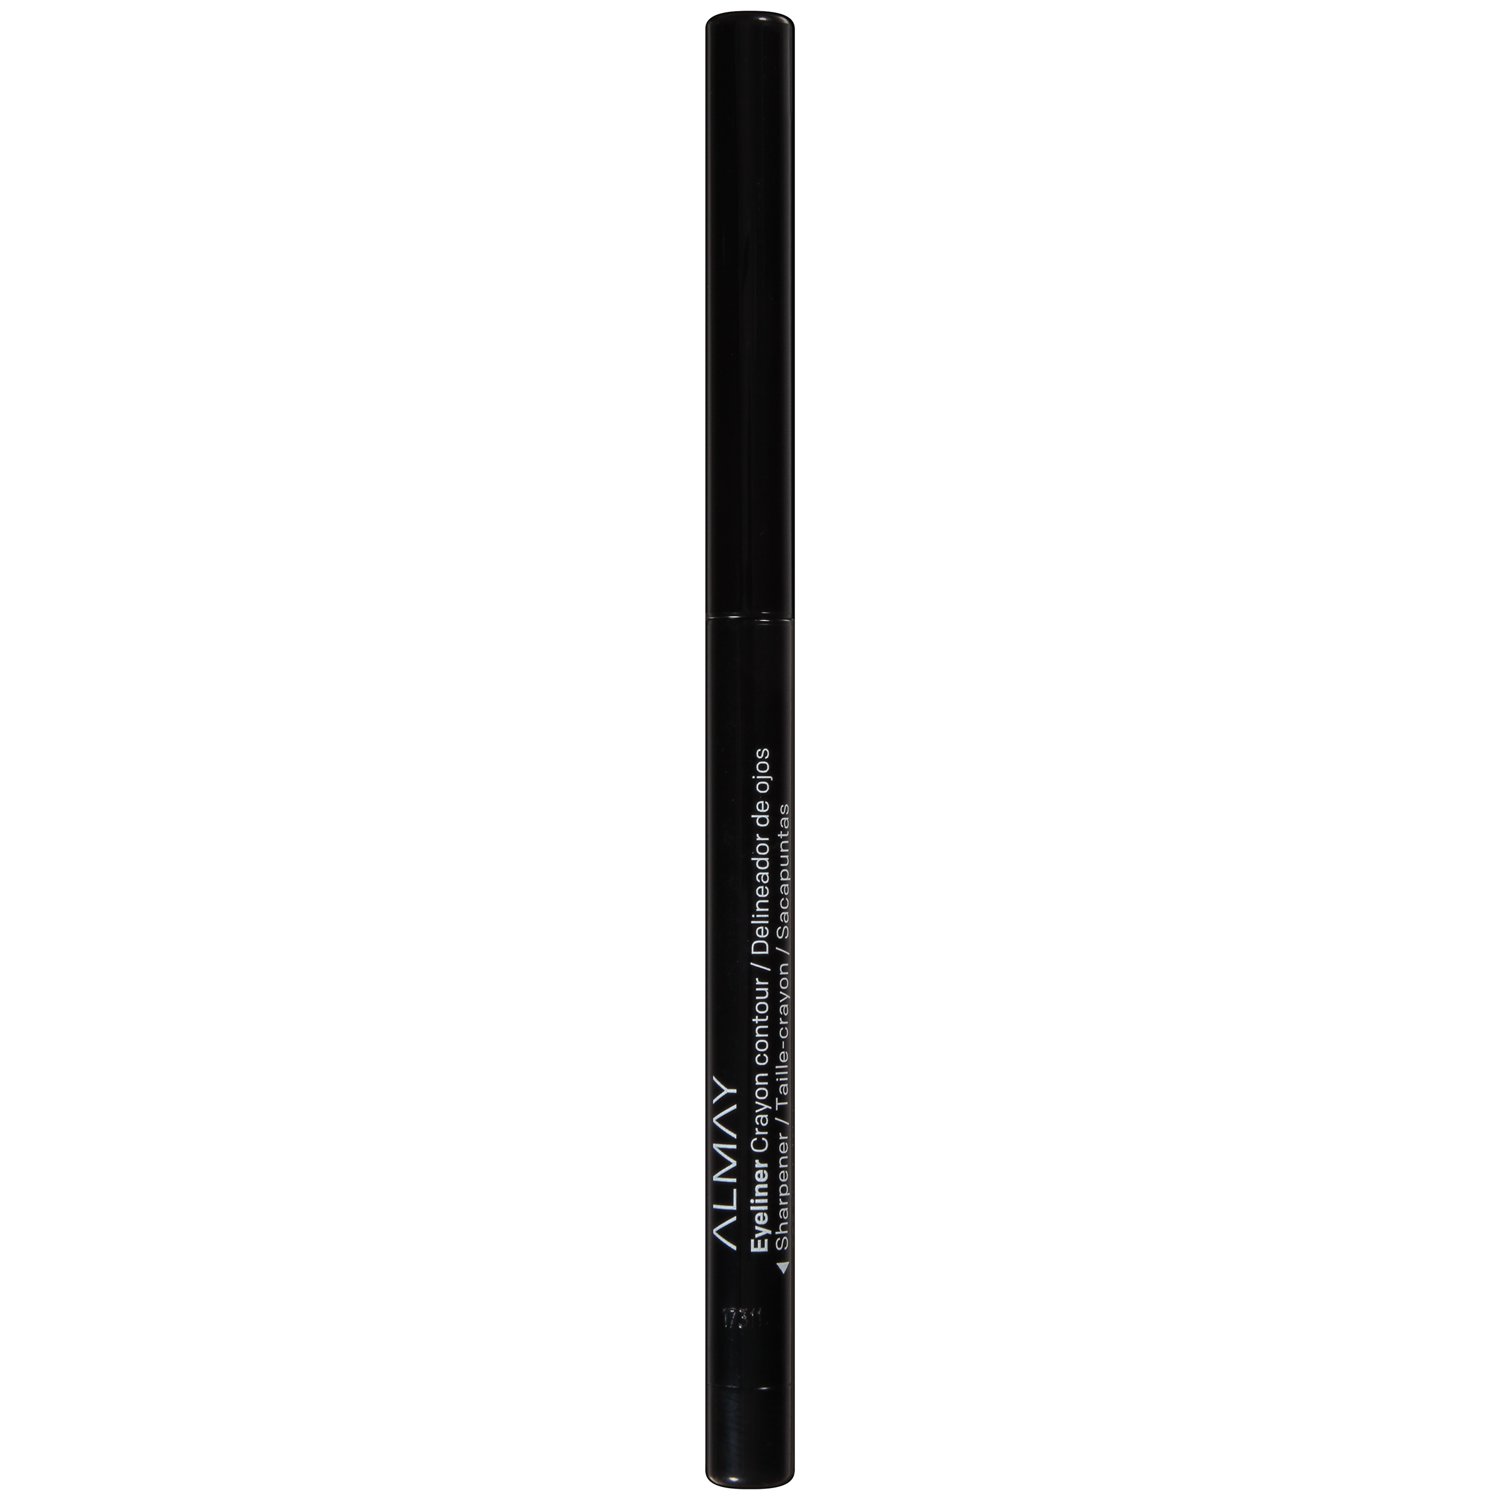 Almay Crayon Contour Water Resistant Eyeliner Pencil, 205 Black - image 1 of 14